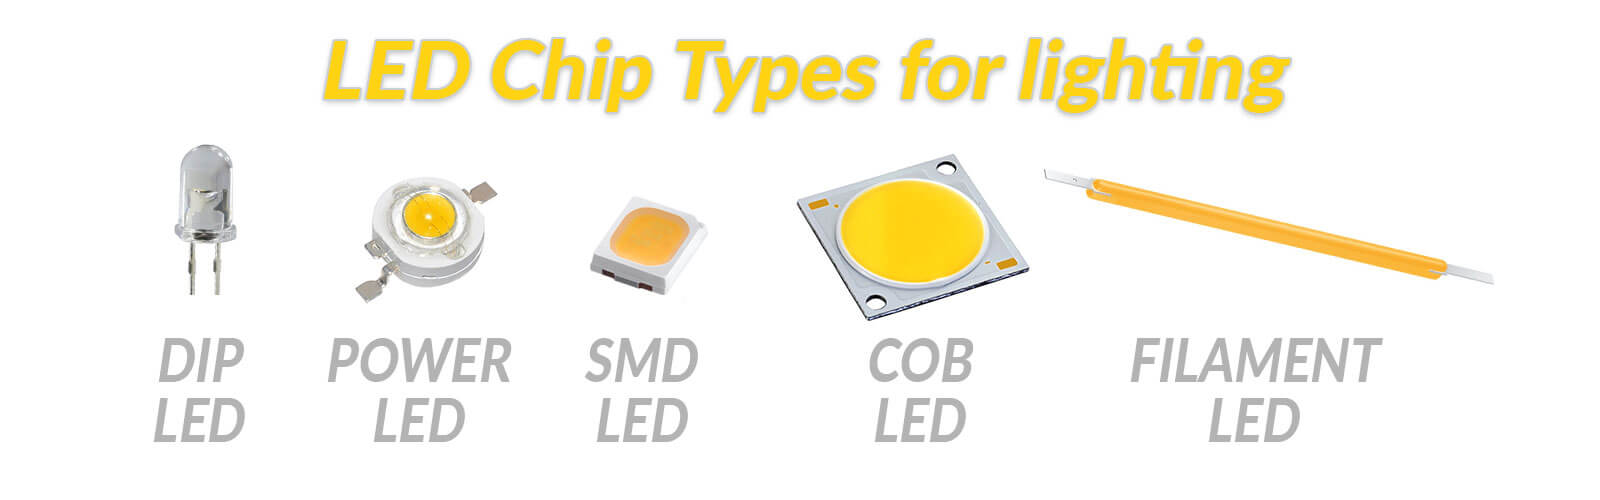 led chip types for lighting 1600px